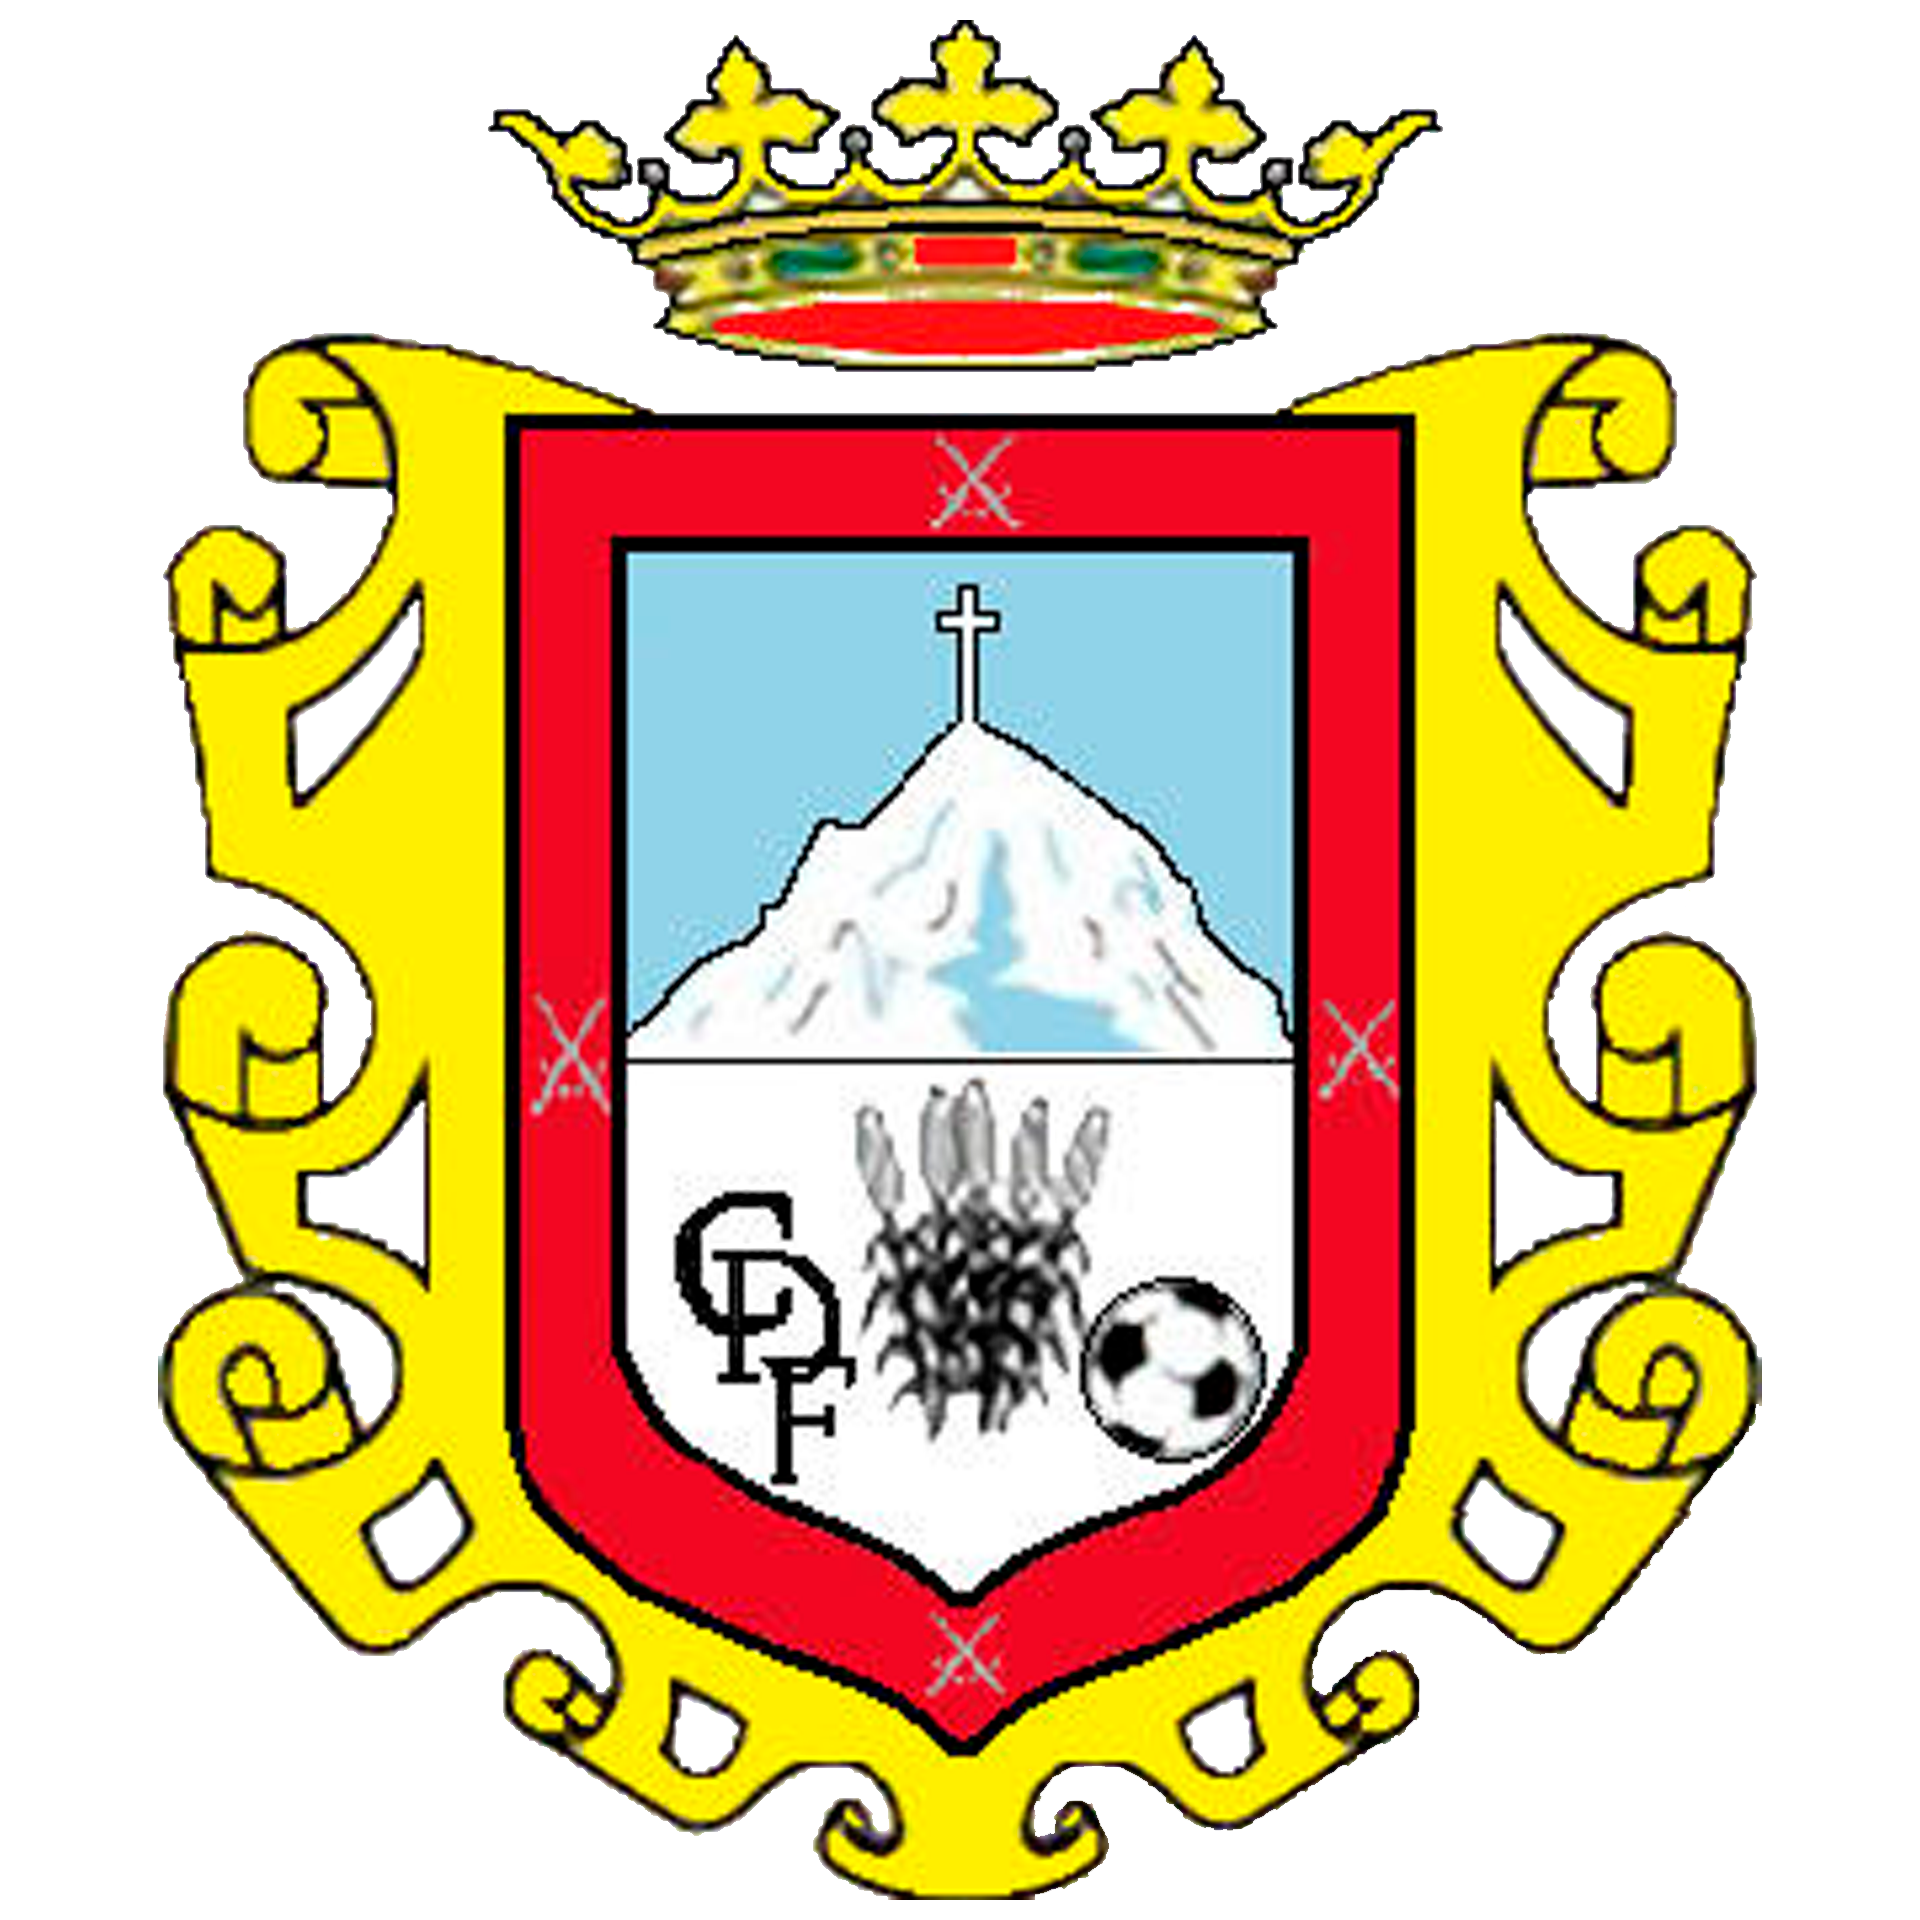 Club Deportivo Firgas